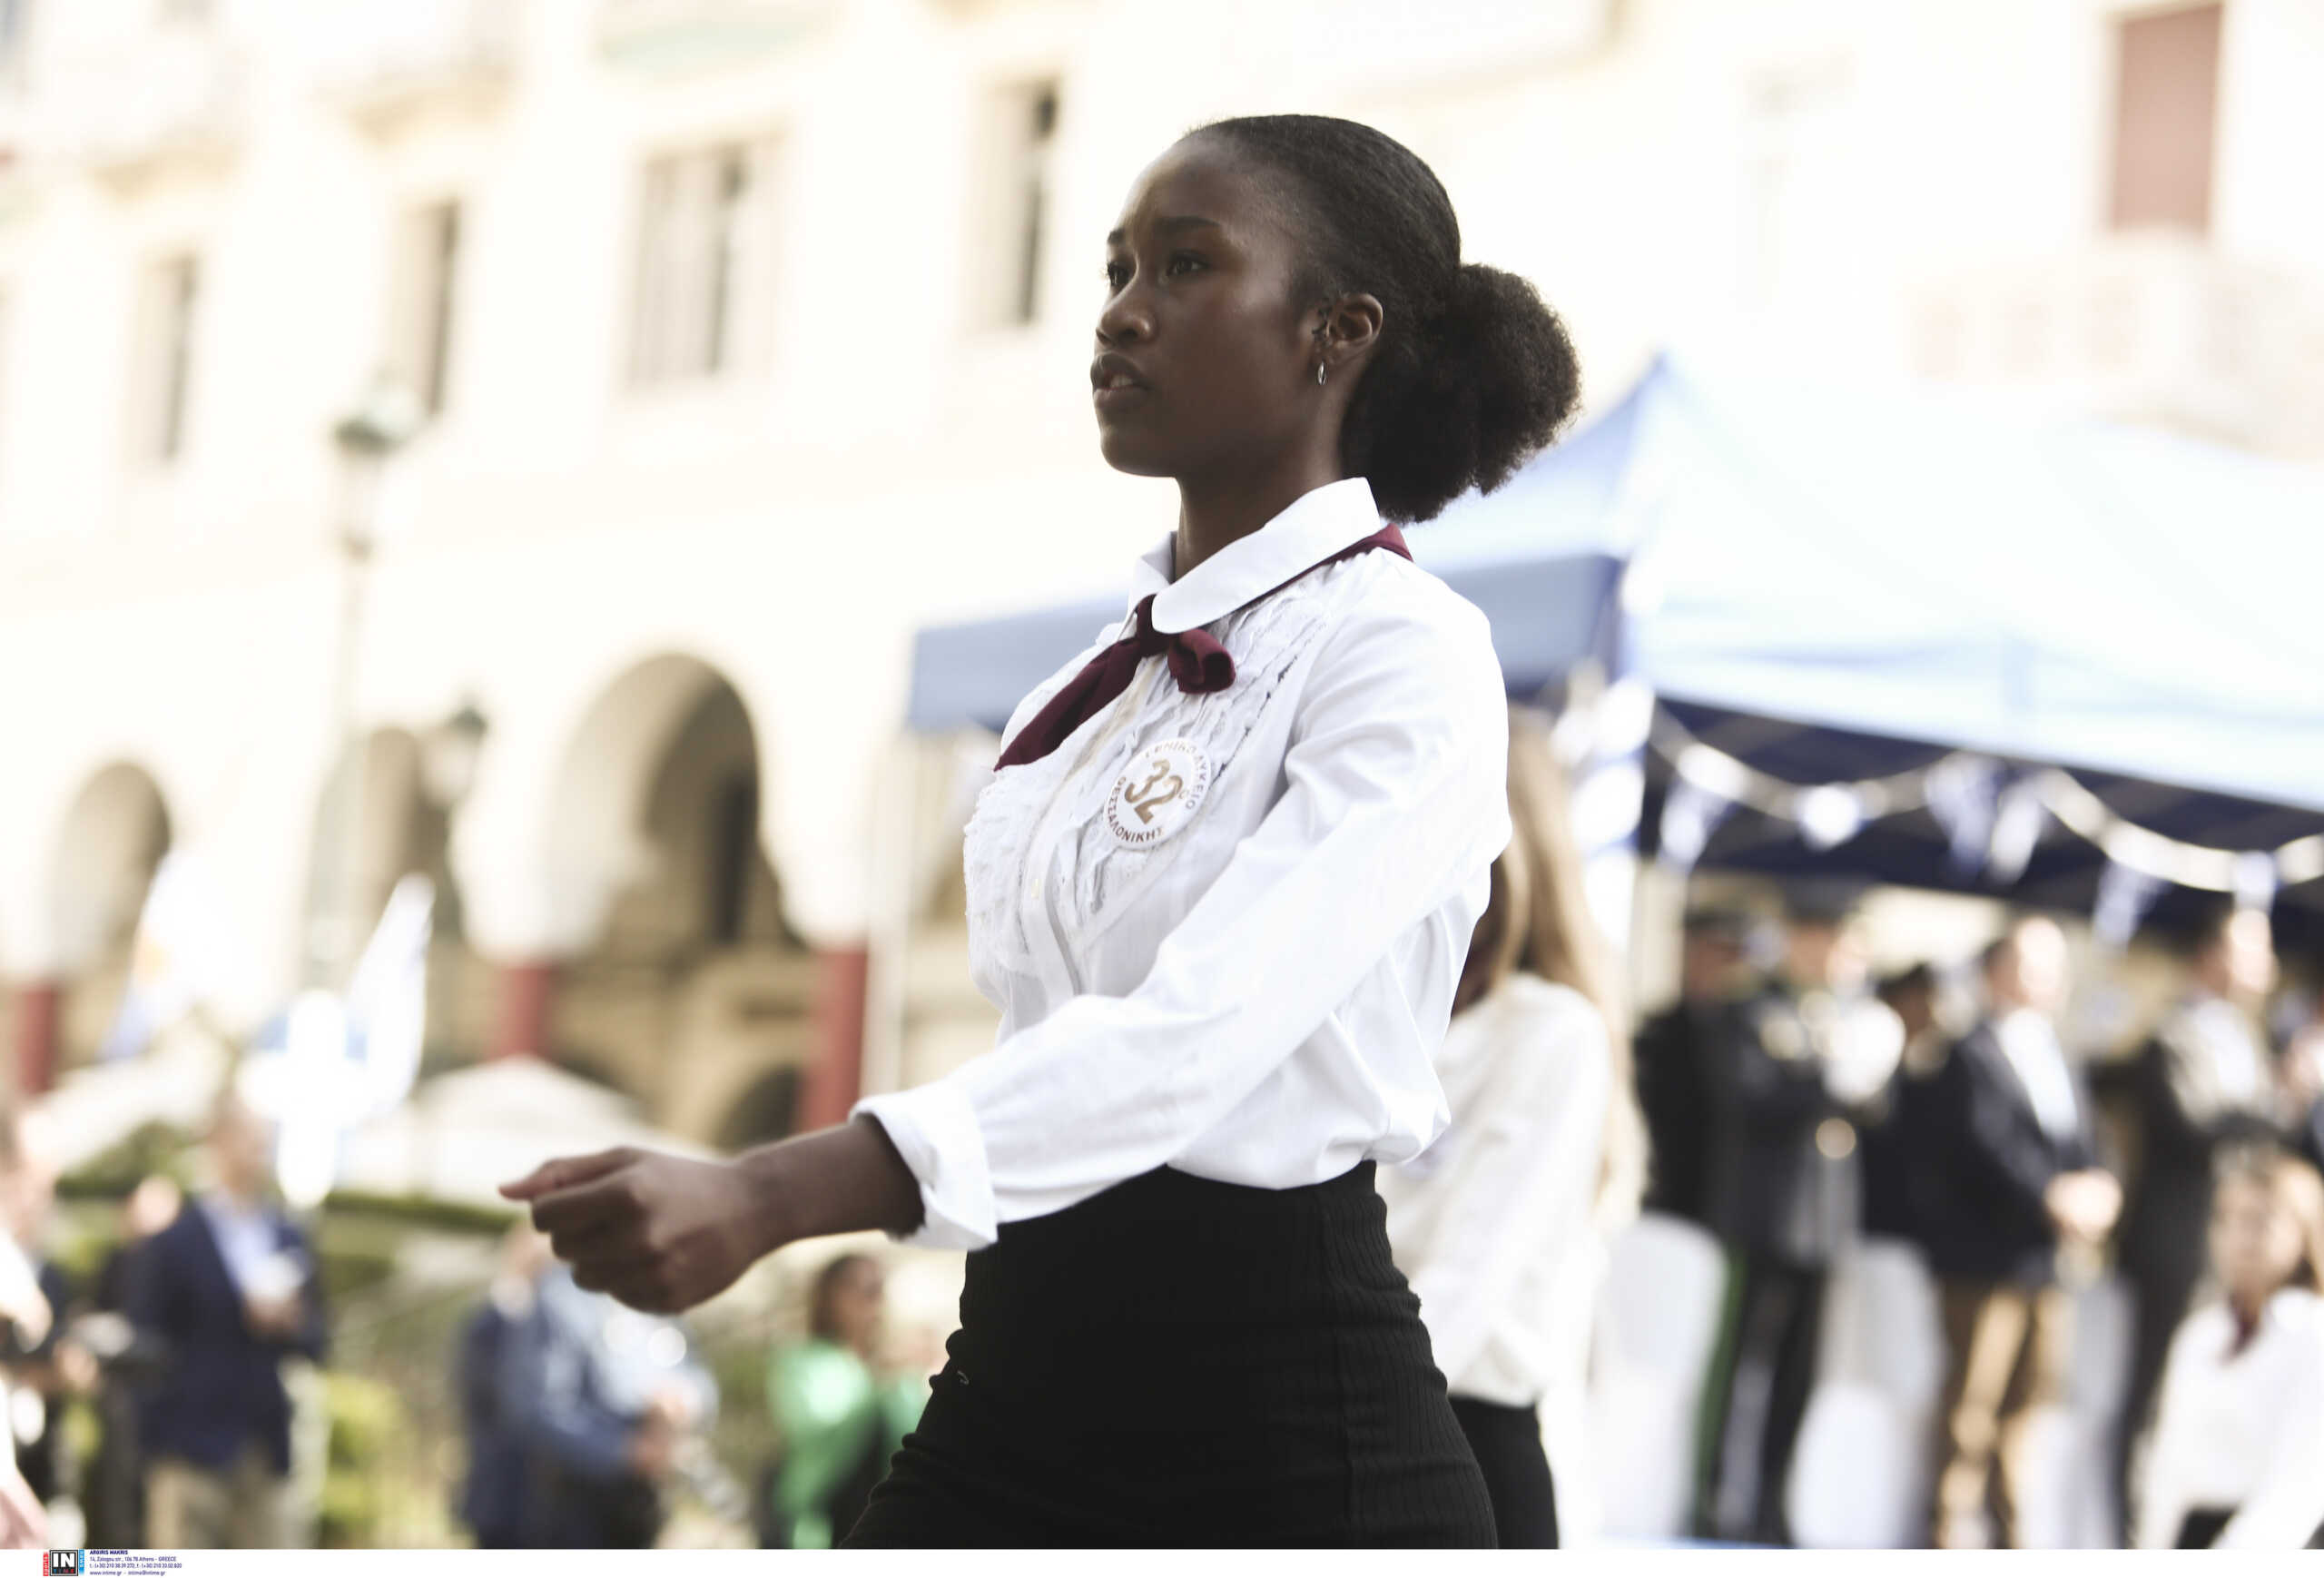 28η Οκτωβρίου: Συγκινεί μαθήτρια με καταγωγή από την Κένυα στην παρέλαση – «Είμαι υπερήφανη για την πατρίδα μου»